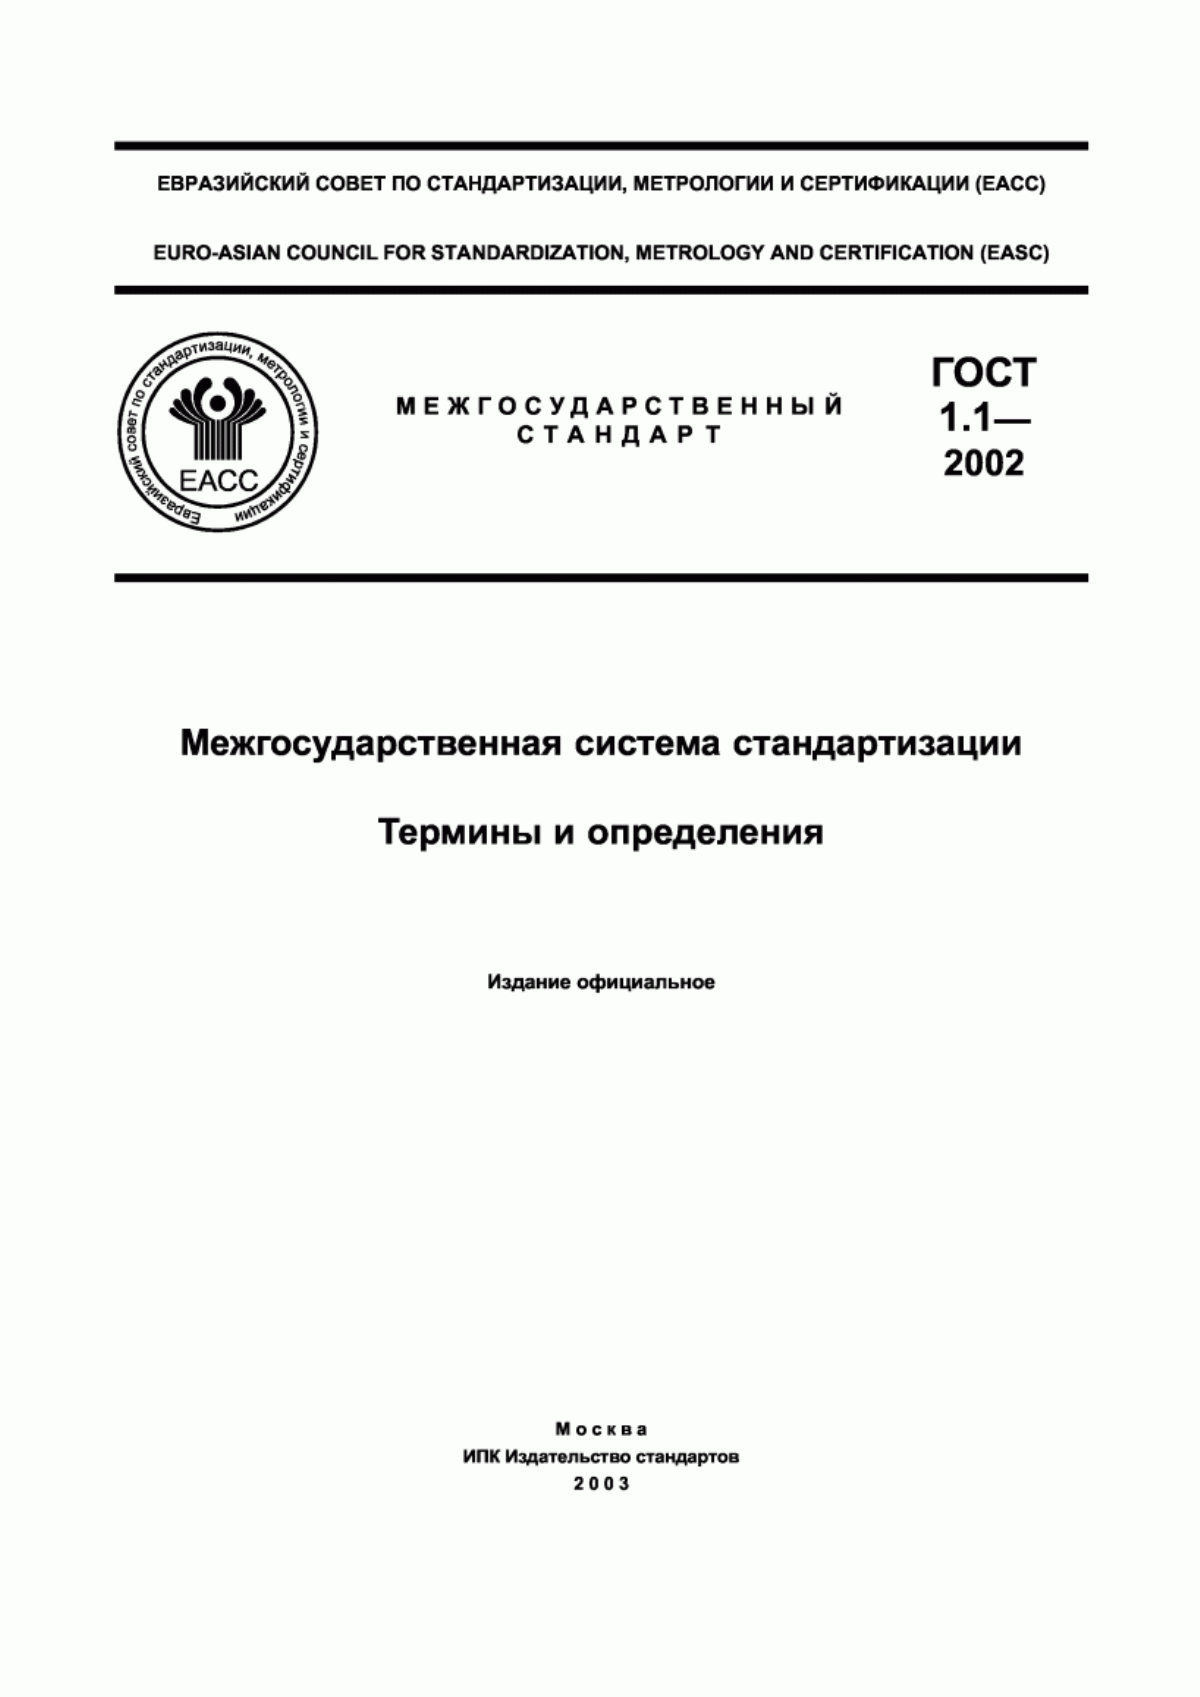 ГОСТ 1.1-2002 Межгосударственная система стандартизации. Термины и определения